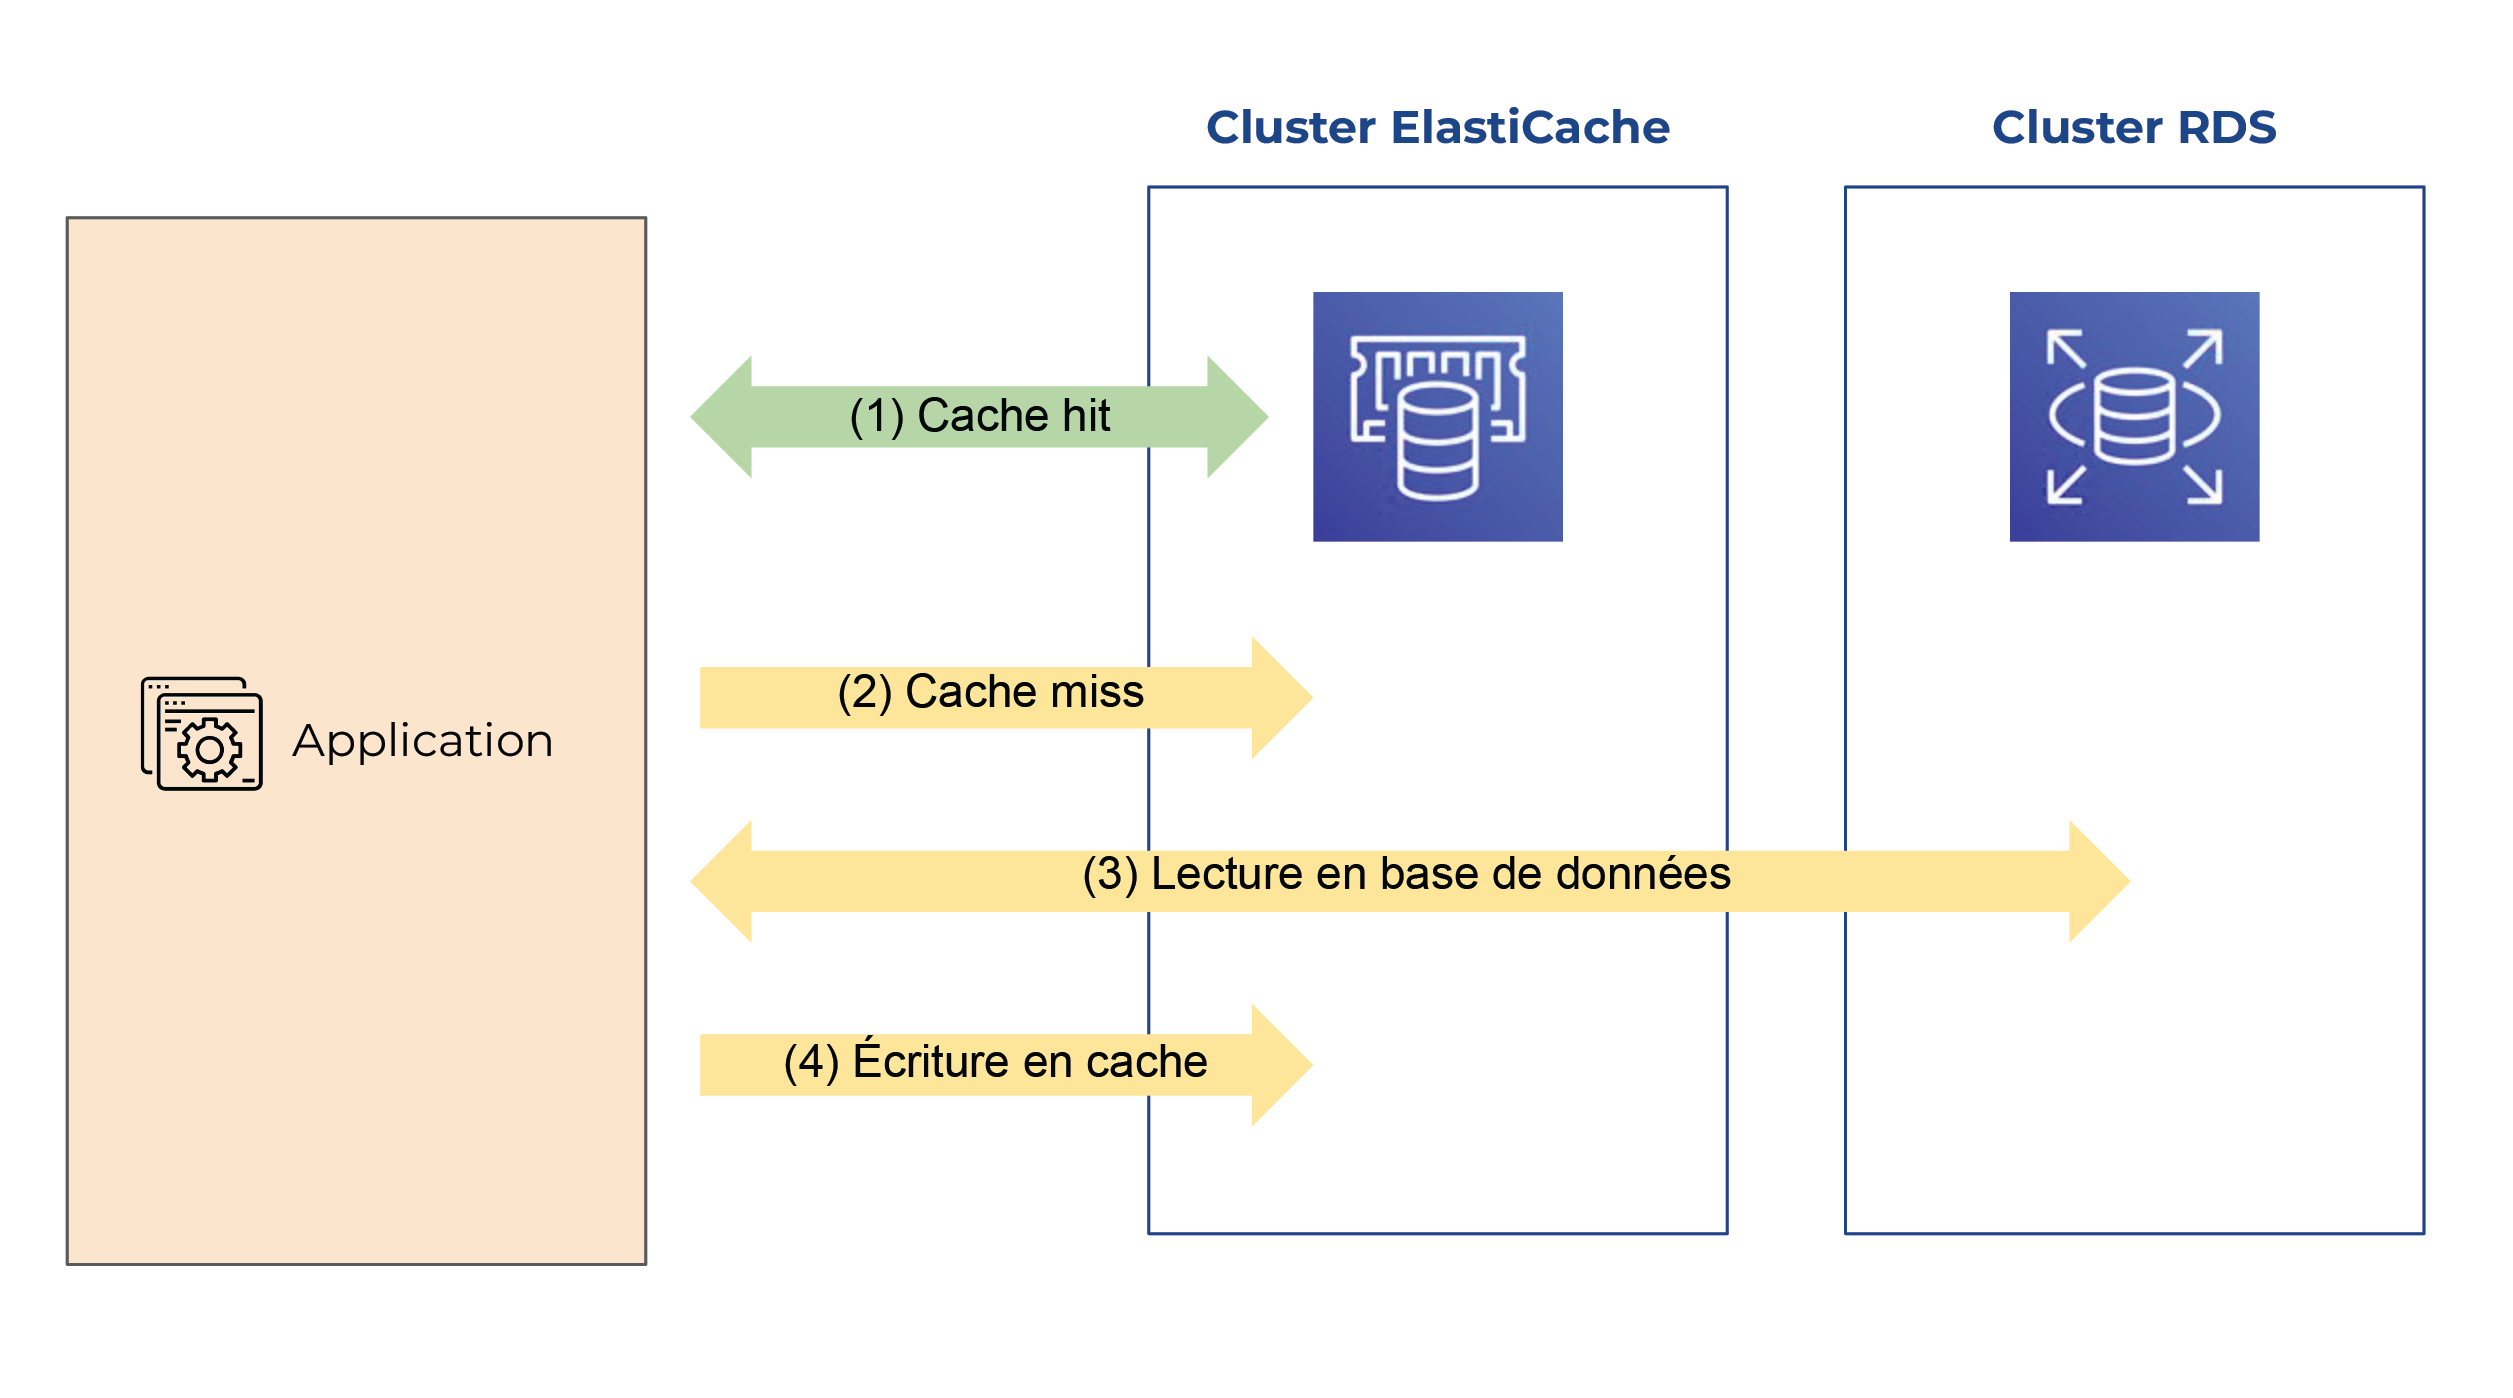 Application est relié par les flèches “cache hit” (1), “cache miss” (2) et “écriture de cache” (4) avec ClusterElastiCache, et par une flèche “lecture en base de données” avec Cluster RDS (3).